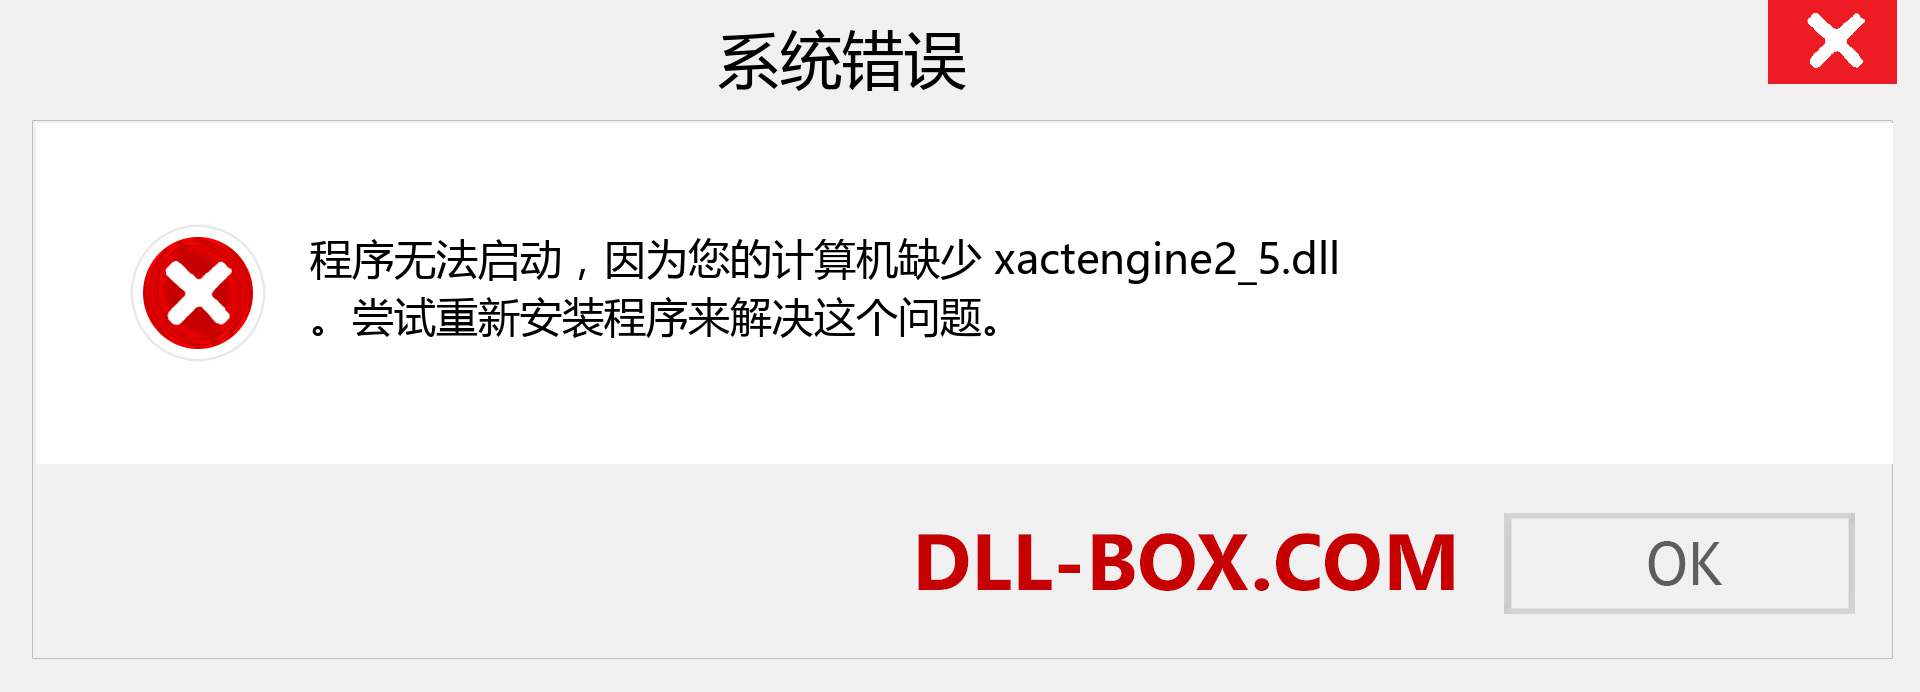 xactengine2_5.dll 文件丢失？。 适用于 Windows 7、8、10 的下载 - 修复 Windows、照片、图像上的 xactengine2_5 dll 丢失错误